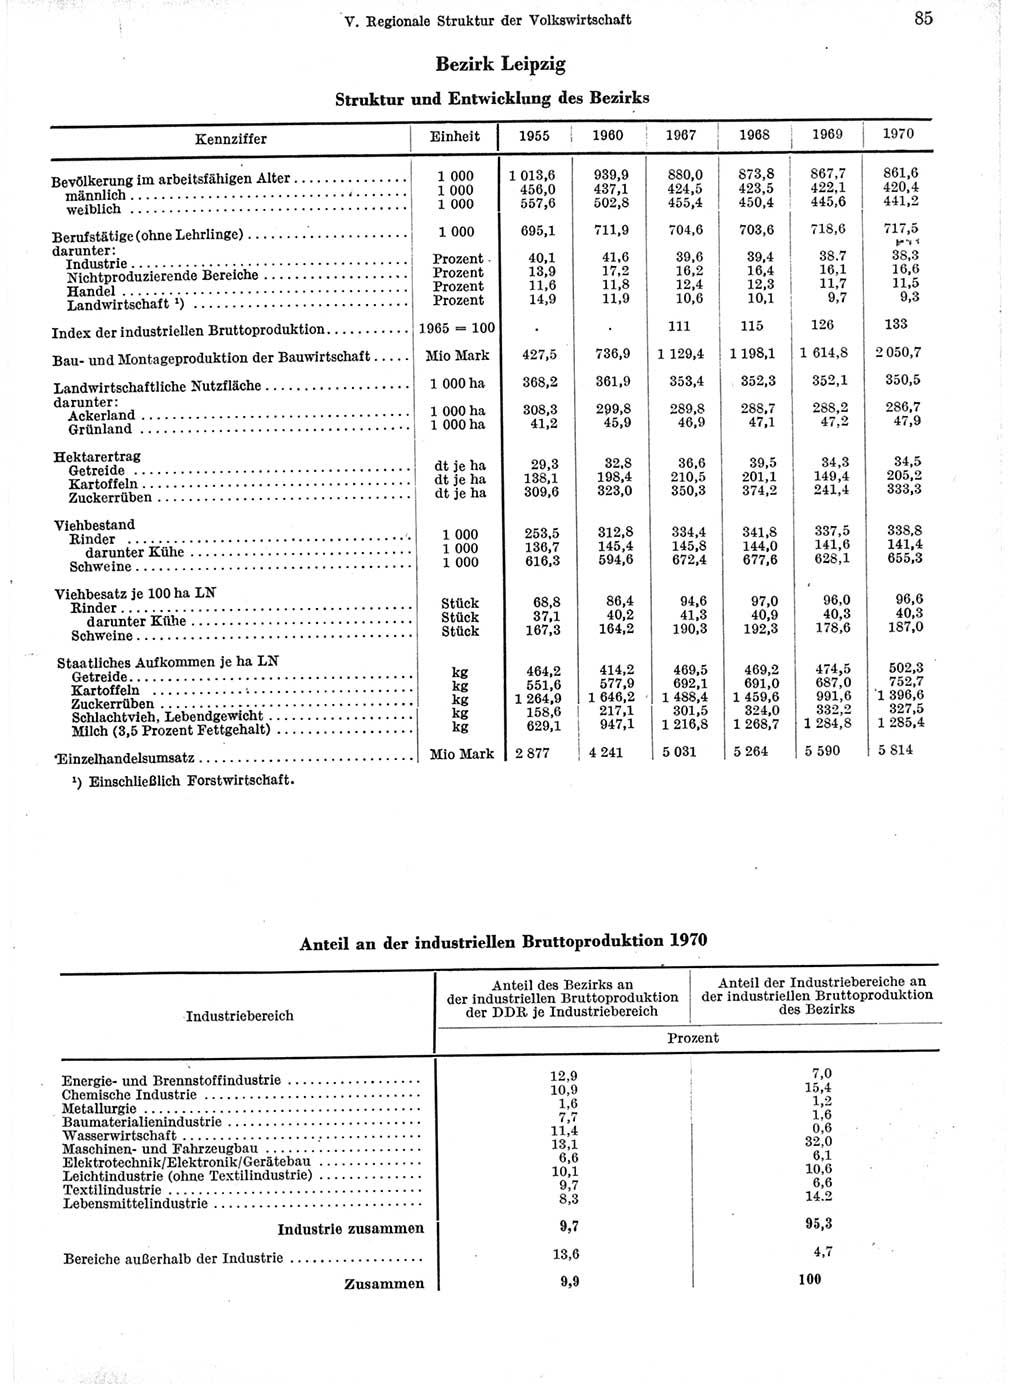 Statistisches Jahrbuch der Deutschen Demokratischen Republik (DDR) 1971, Seite 85 (Stat. Jb. DDR 1971, S. 85)